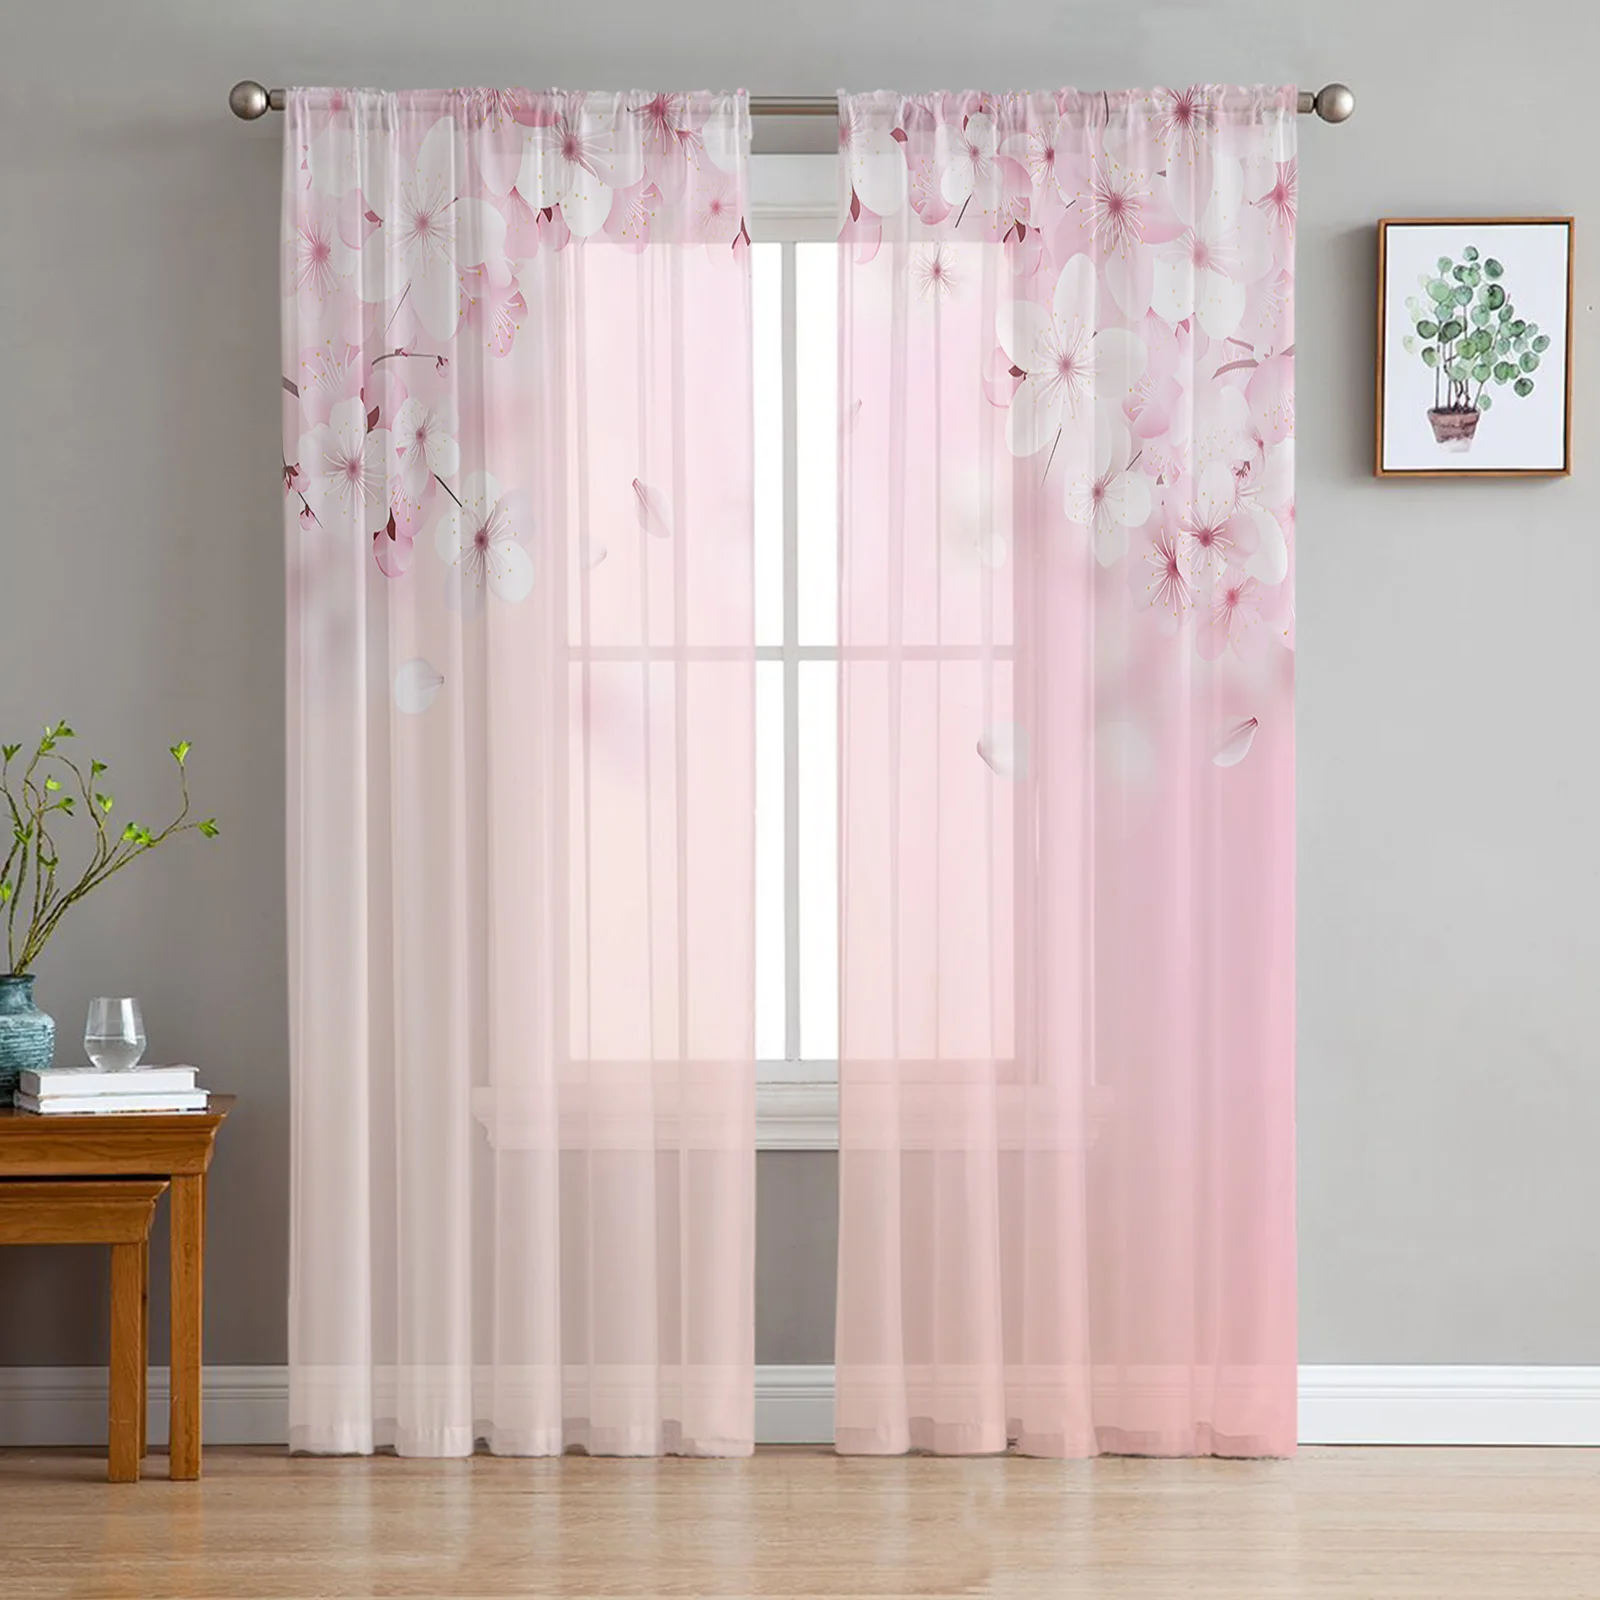 

Тюлевые занавески с розовыми лепестками, весенние полупрозрачные шторы из вуали для гостиной, кухни, спальни, окна